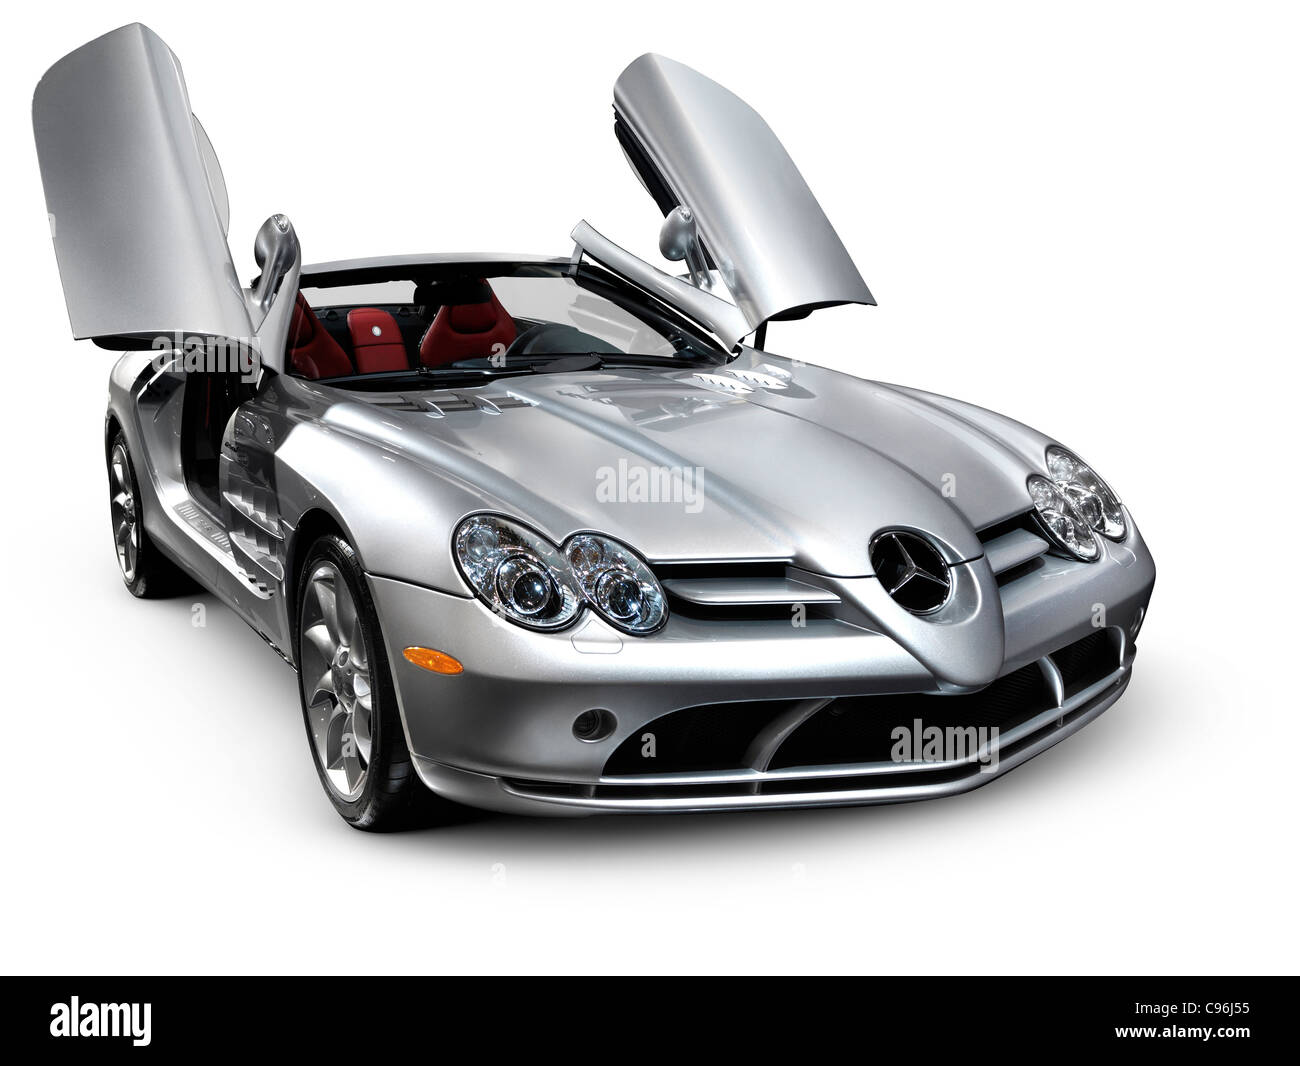 Licence et tirages sur MaximImages.com - Mercedes Benz voiture de luxe, photo de stock automobile. Banque D'Images